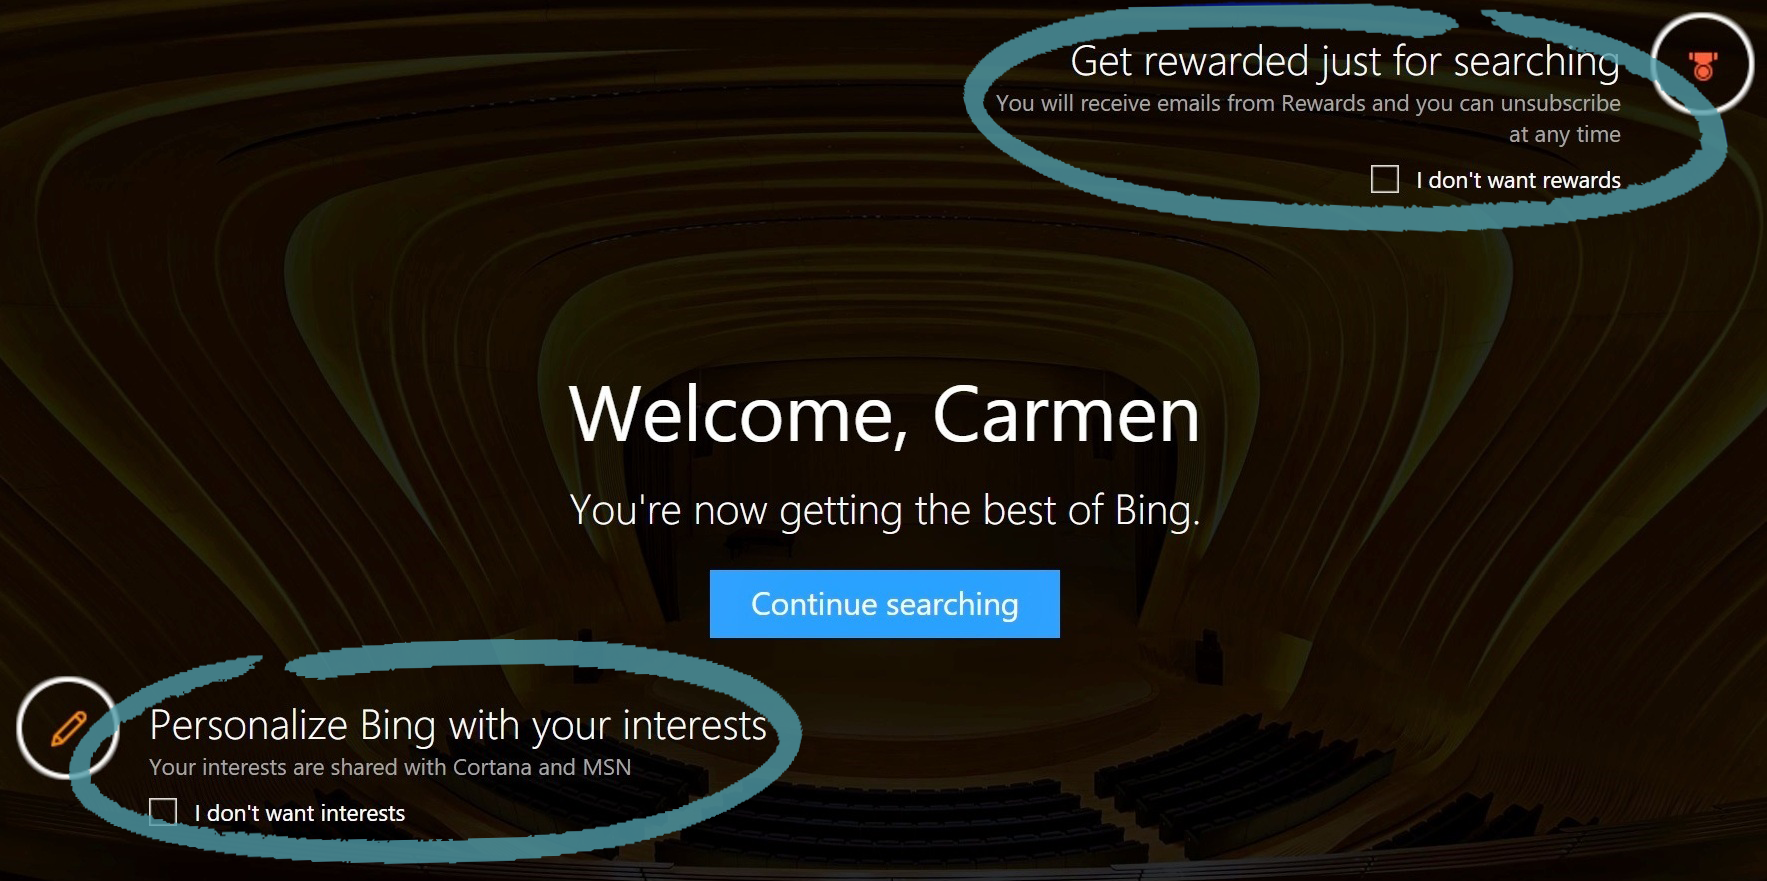 Páxina de inicio de Bing coa participación en Premios e intereses